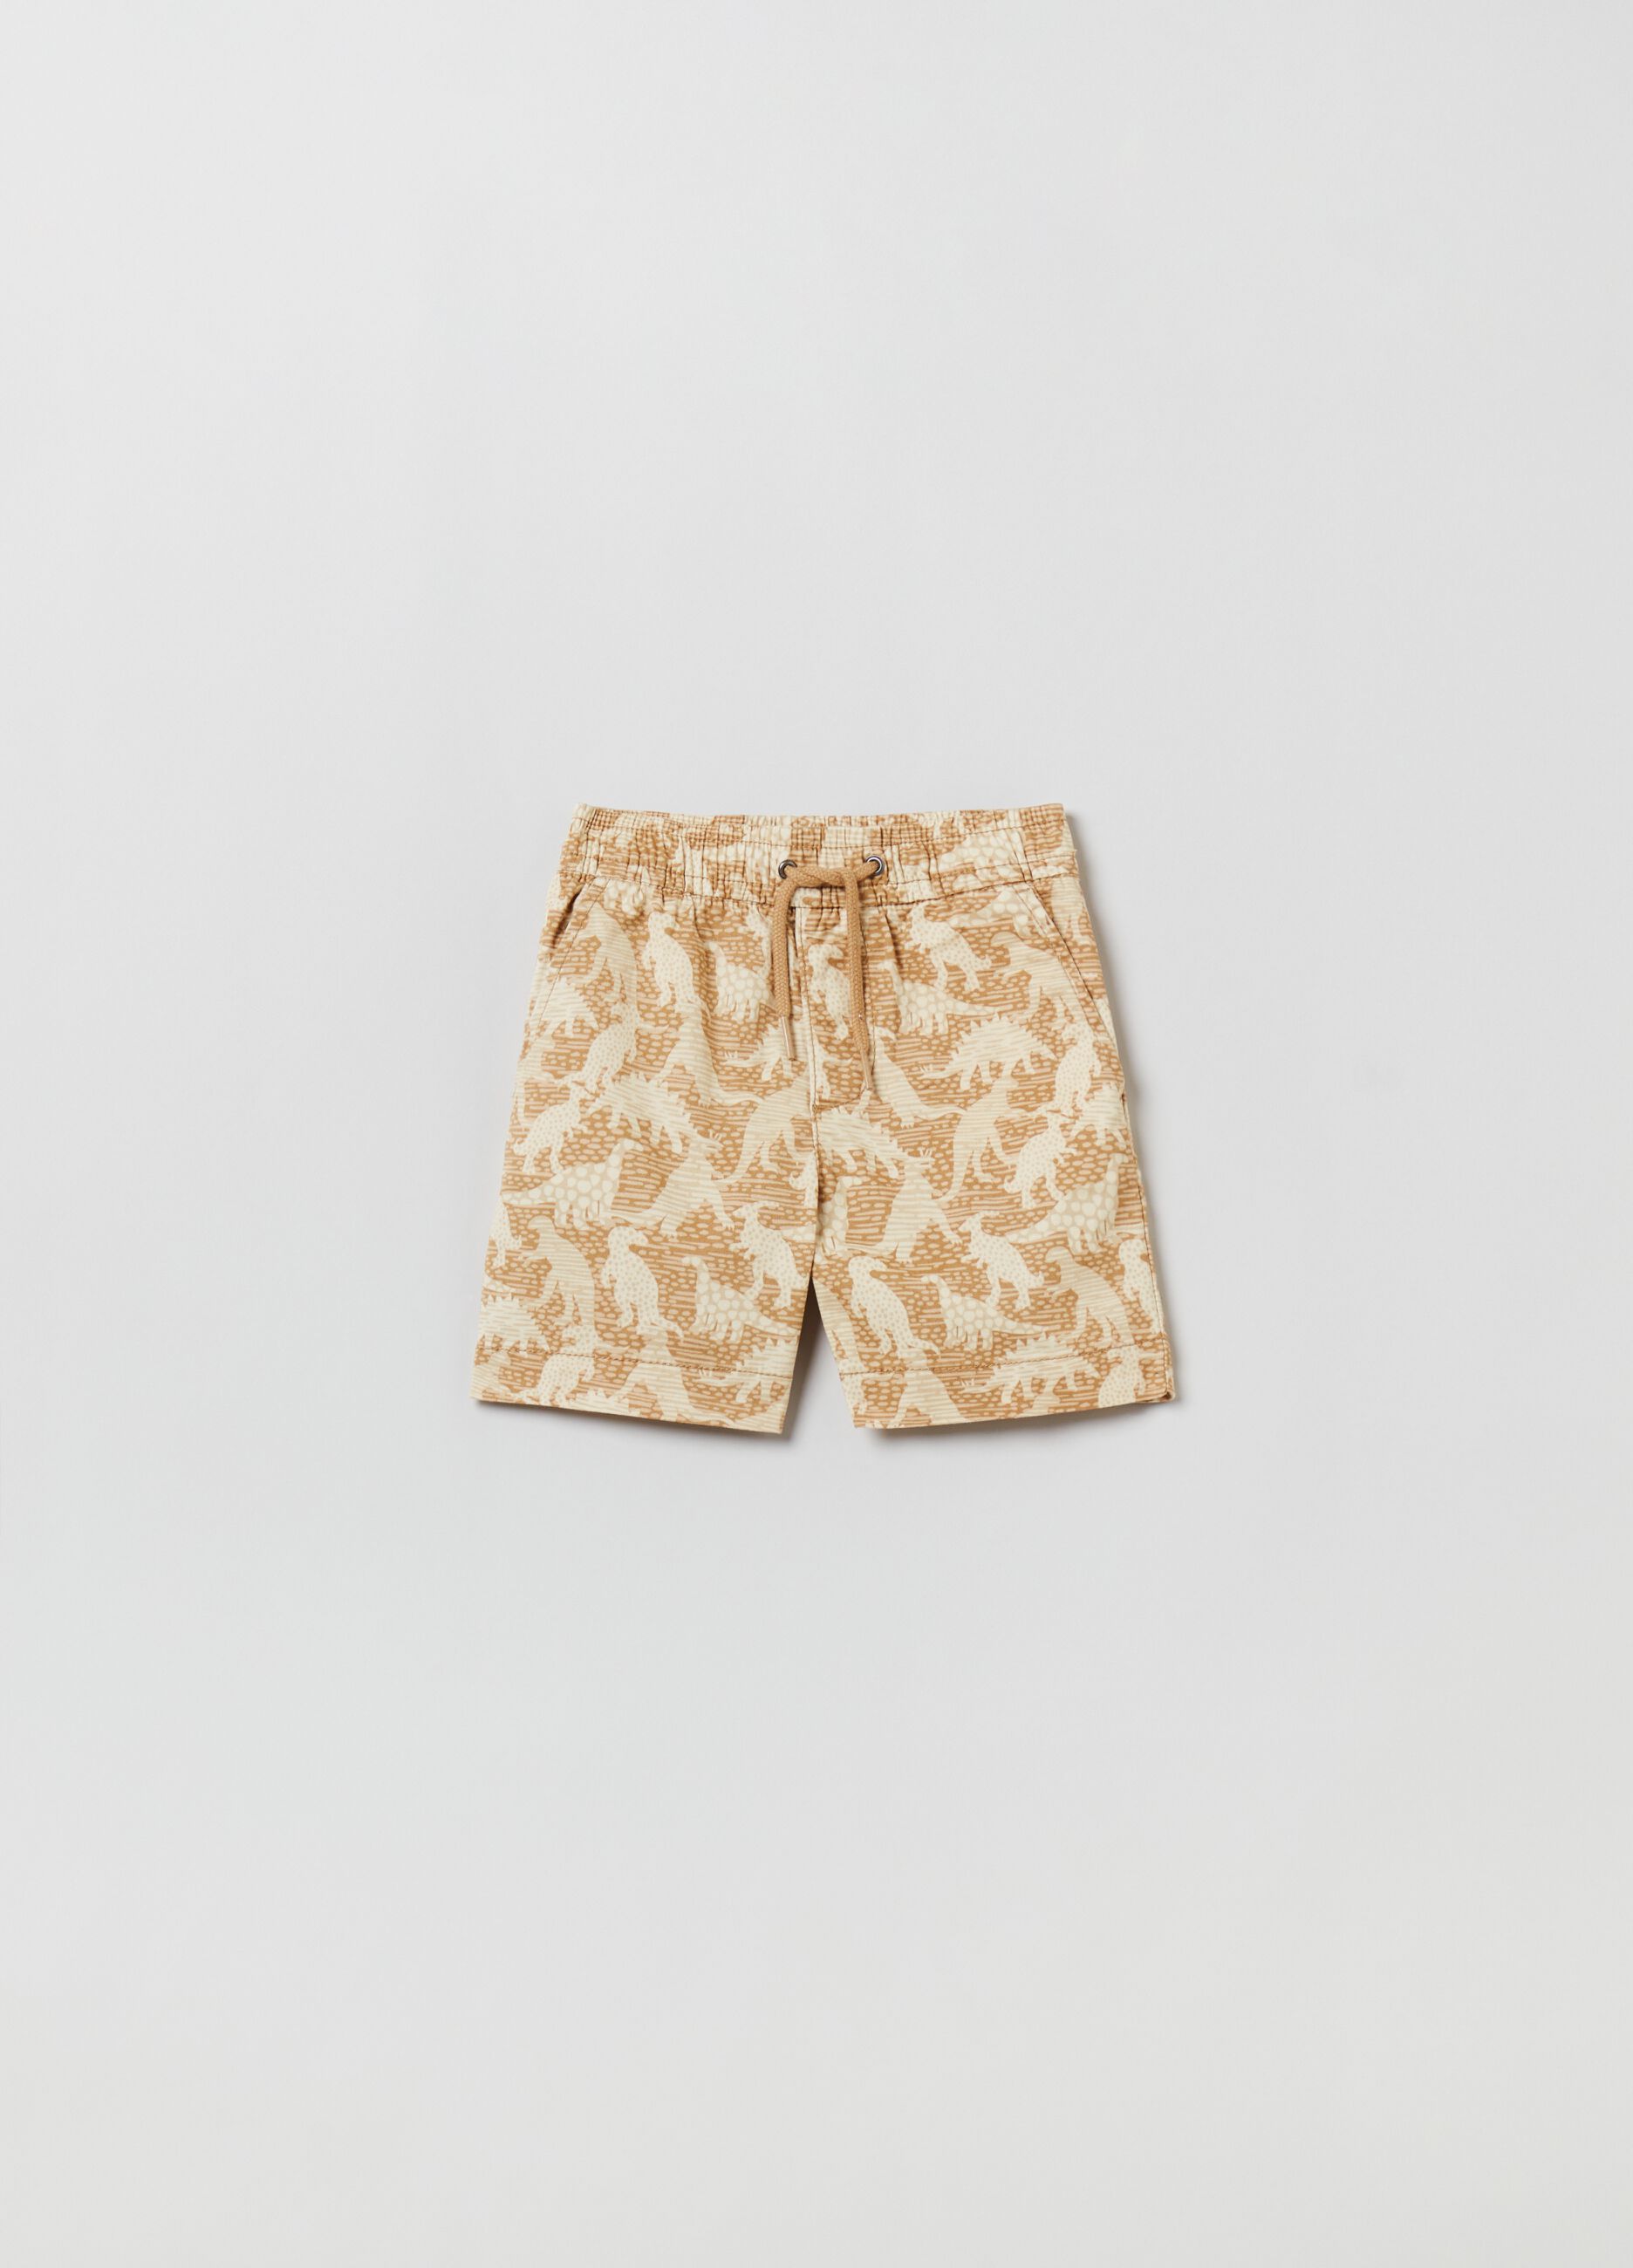 Louis Vuitton Monogram Denim Bermuda Shorts Beige. Size 30